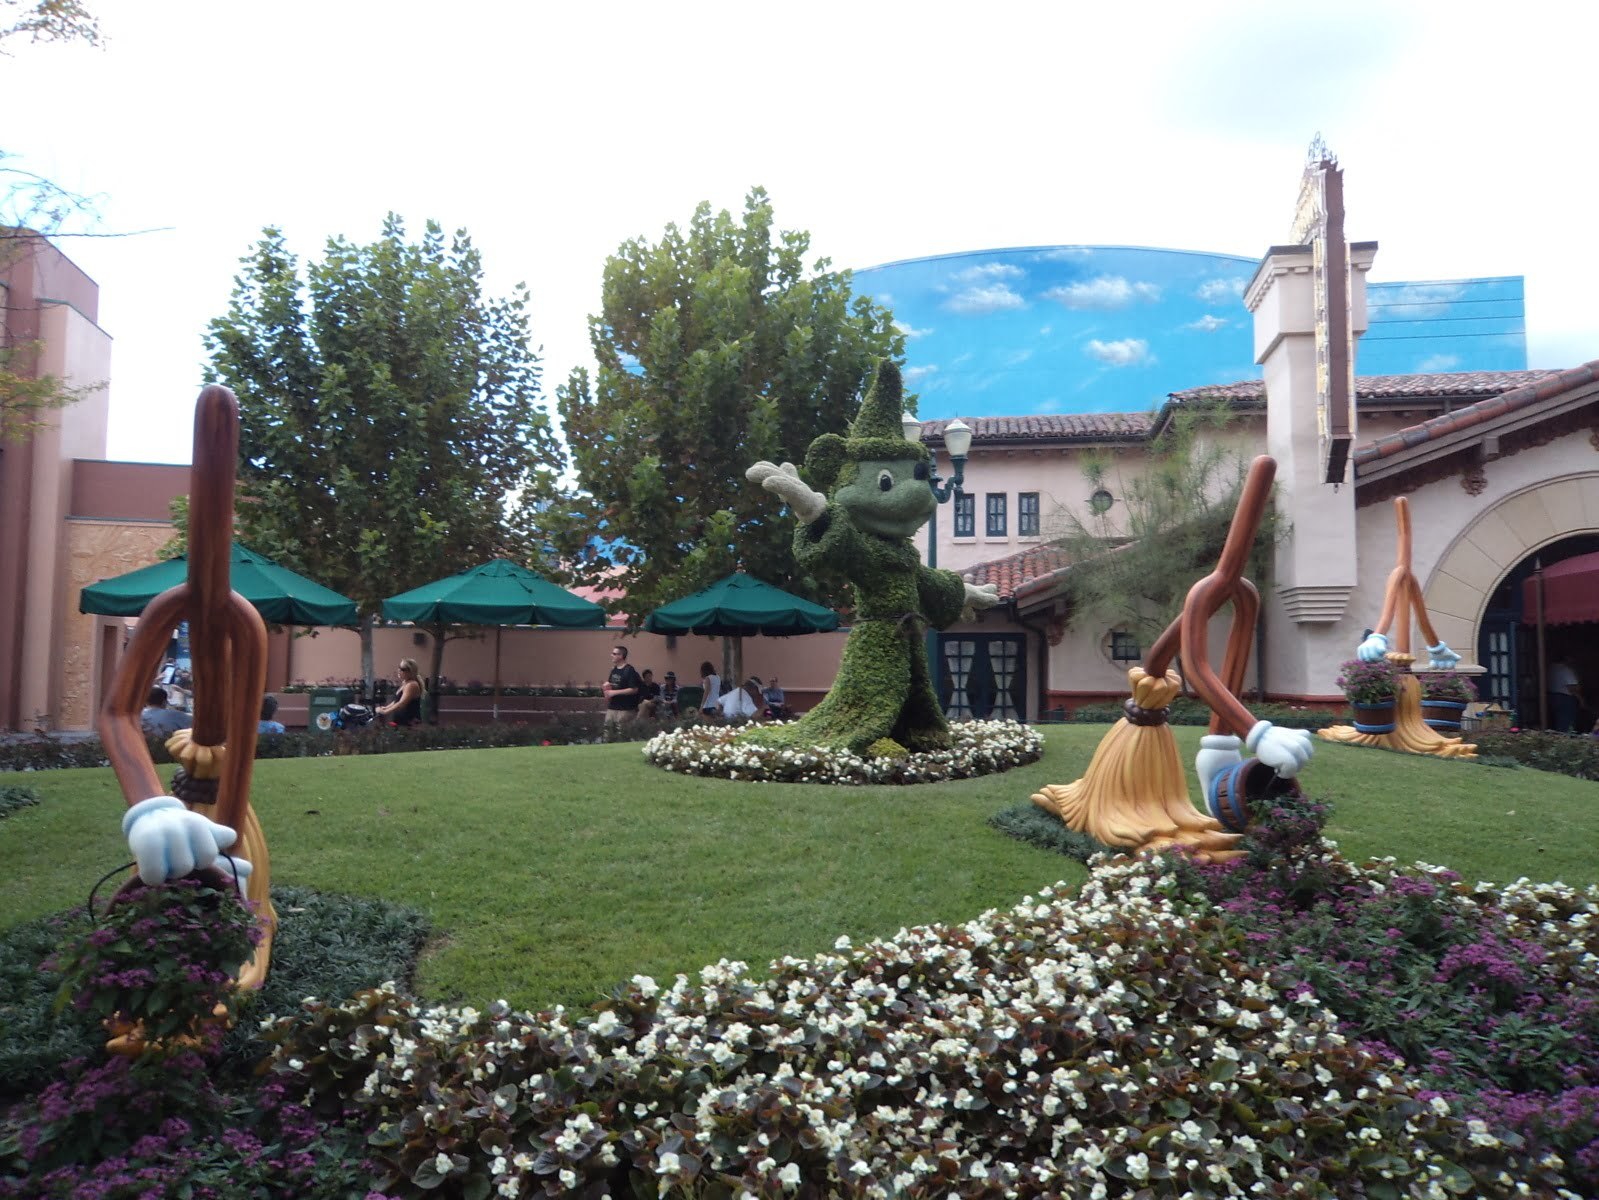 A fantasia dos Parques da Disney estão em cada detalhe - Holywwod Studios, Orlando, EUA